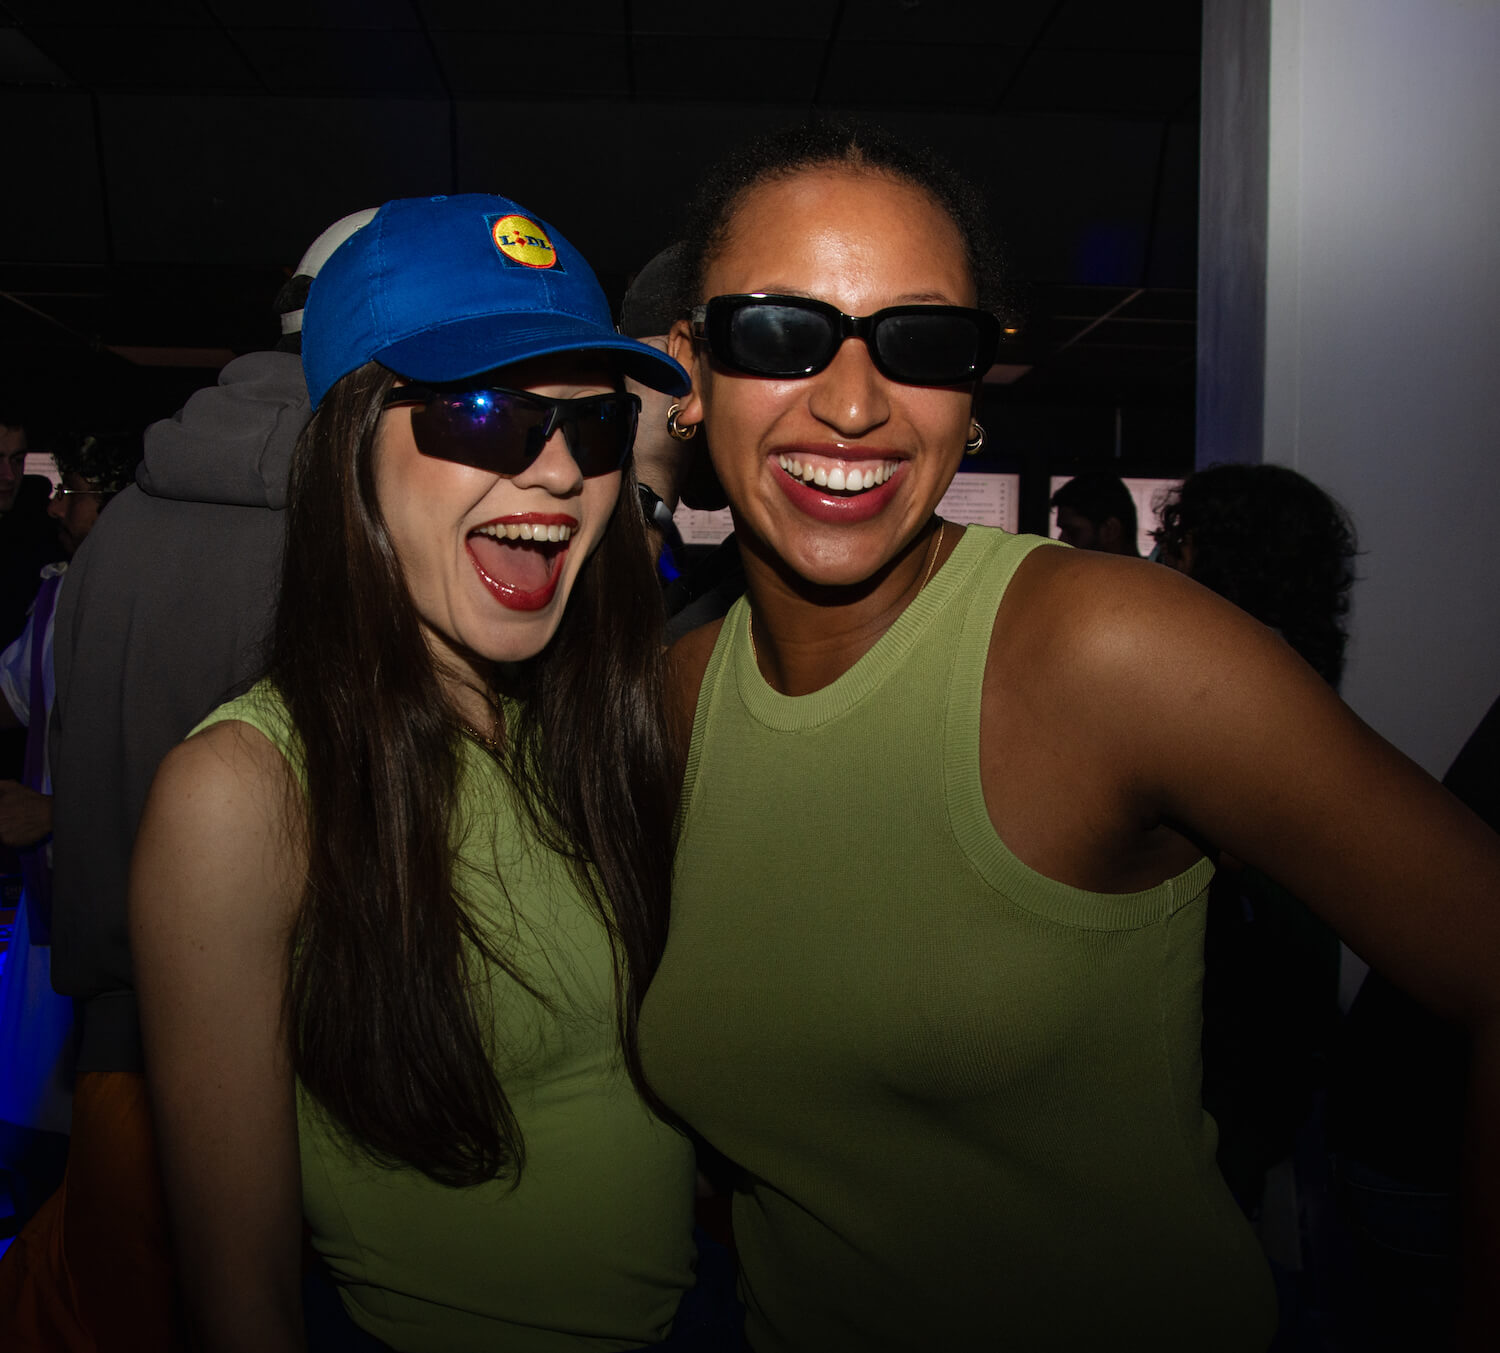 Girls with sunglasses - Akademien Nightclub